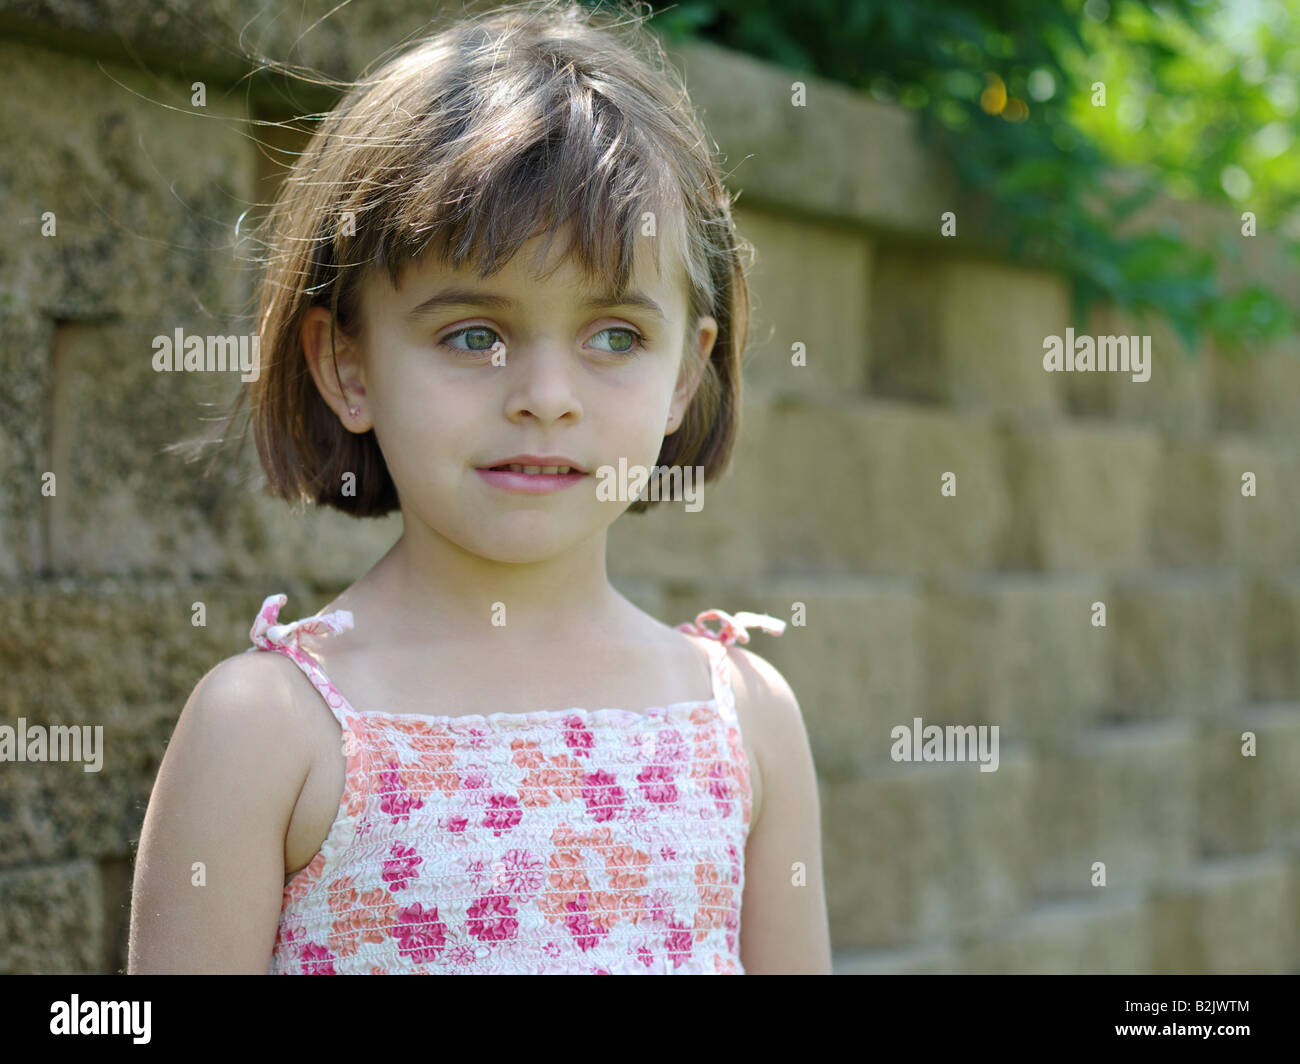 Fille de 5 ans Banque de photographies et d'images à haute résolution -  Alamy